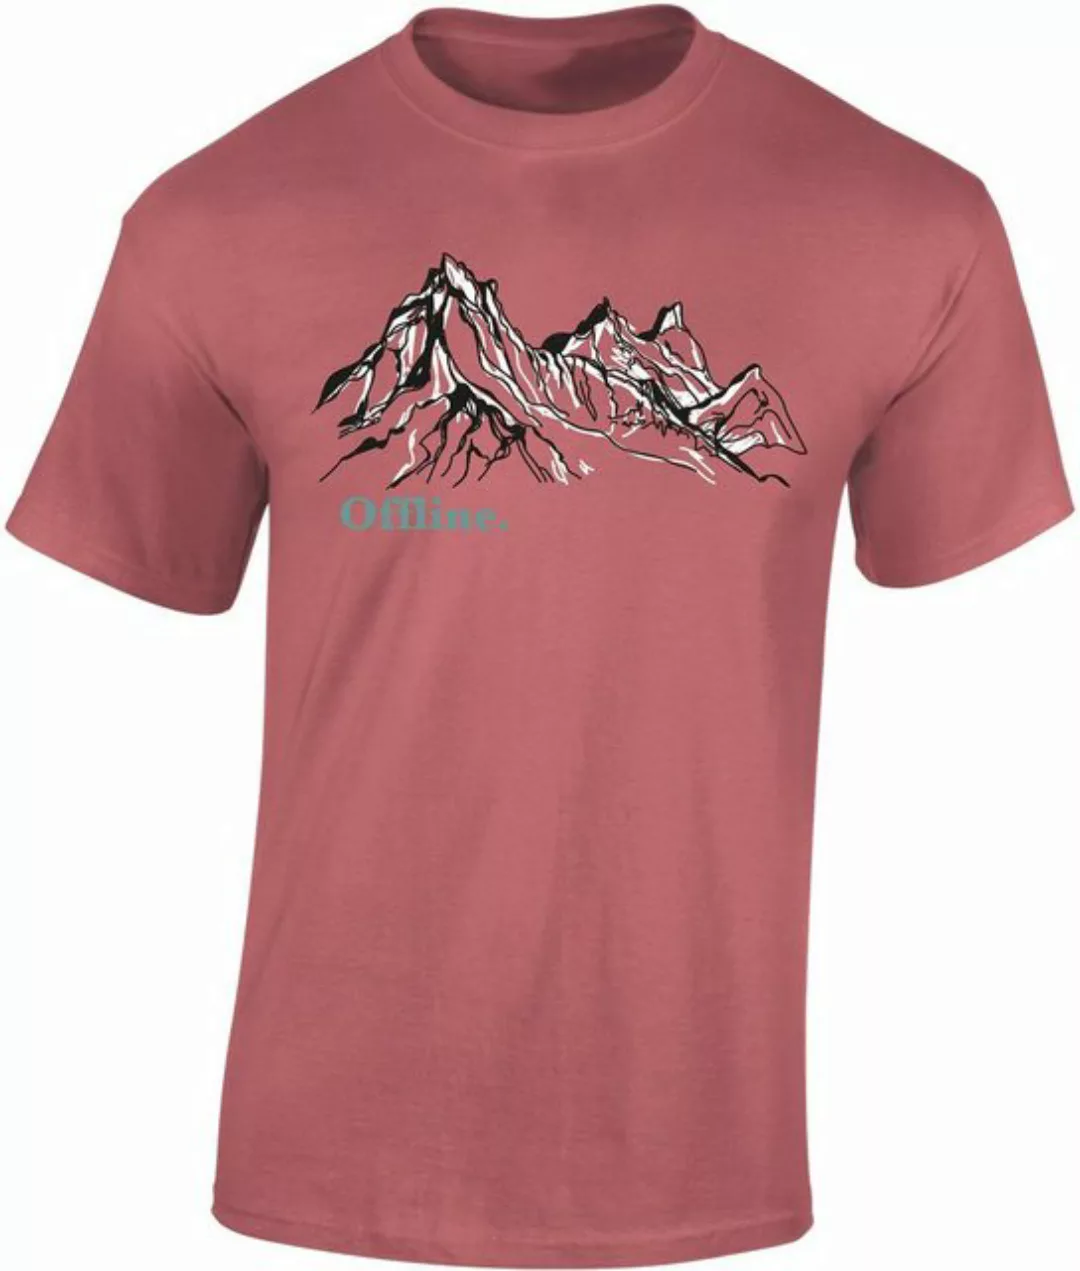 Baddery Print-Shirt Wander Tshirt : Offline - Kletter T-Shirt für Wanderfre günstig online kaufen